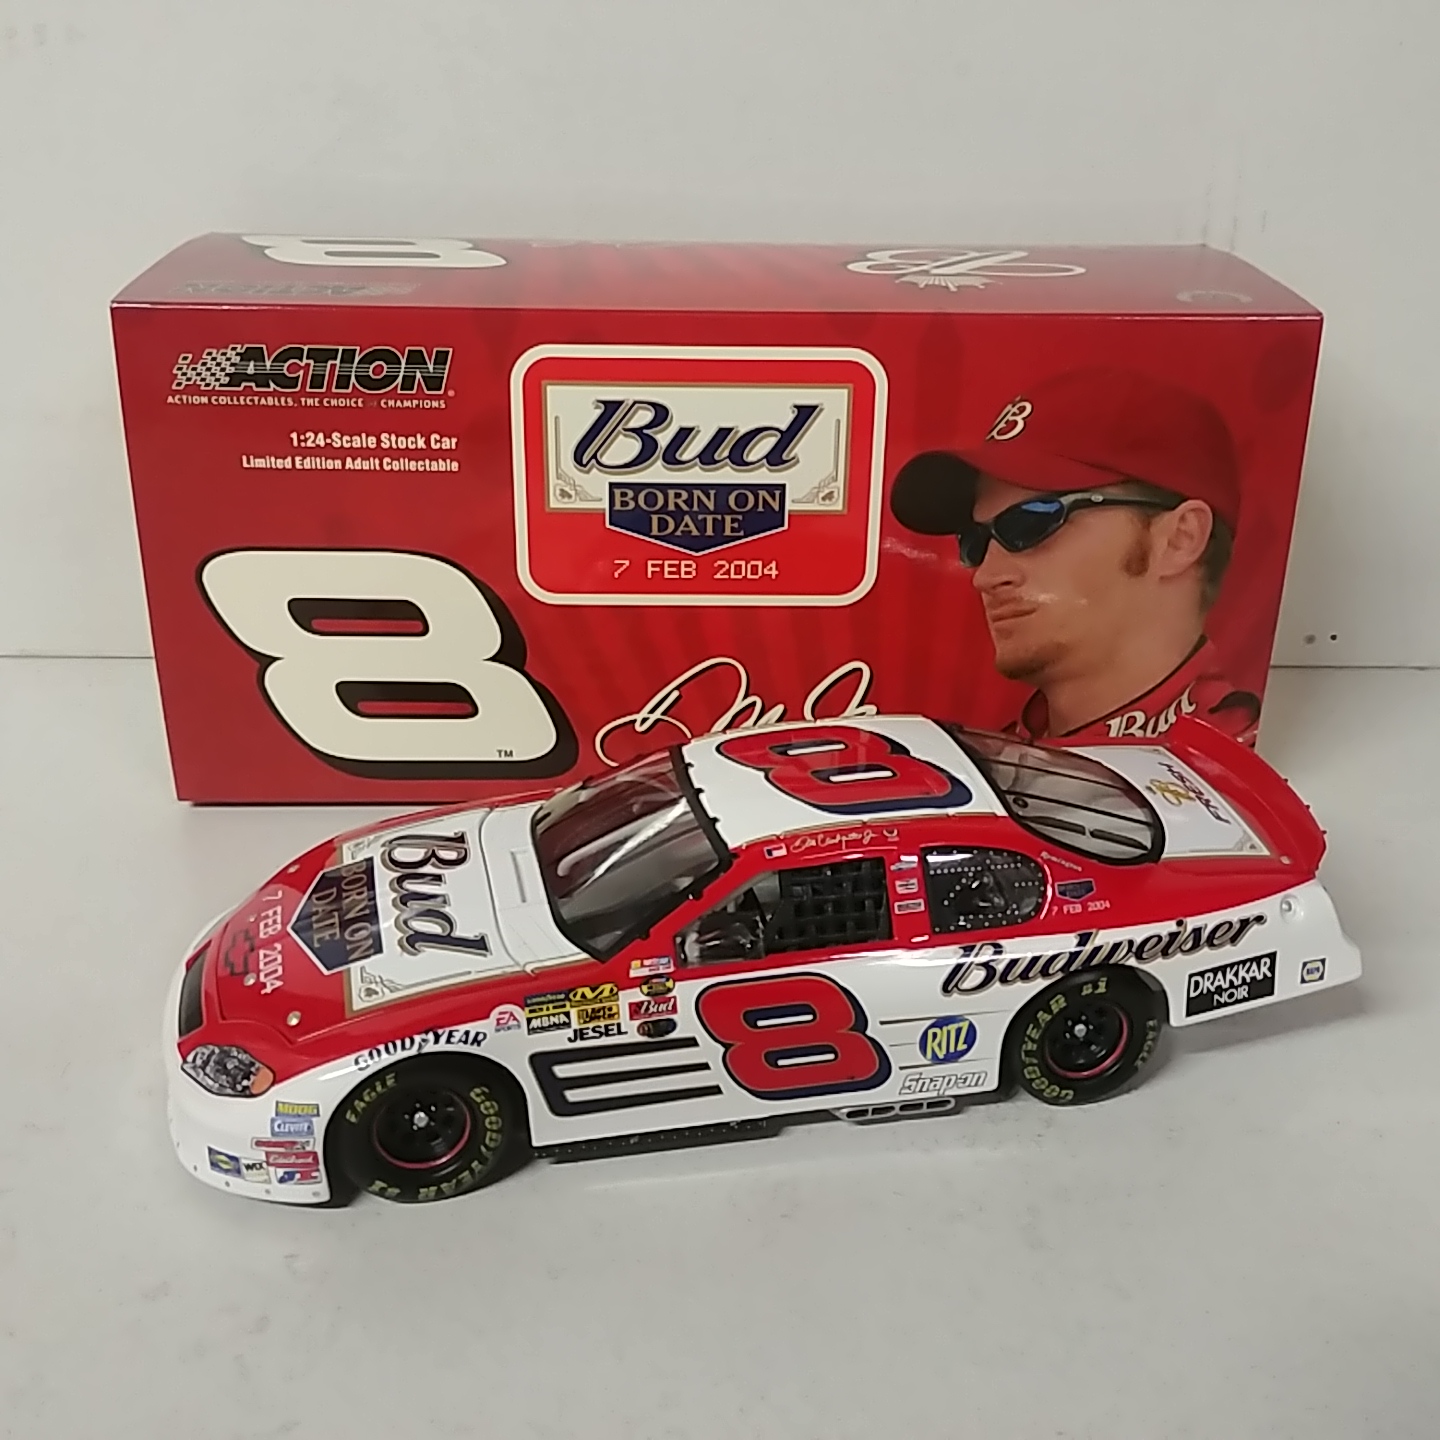 2004 Dale Earnhardt Jr 1/24th Budweiser "Bud Shoot Out" Born on Date Feb 7th c/w car